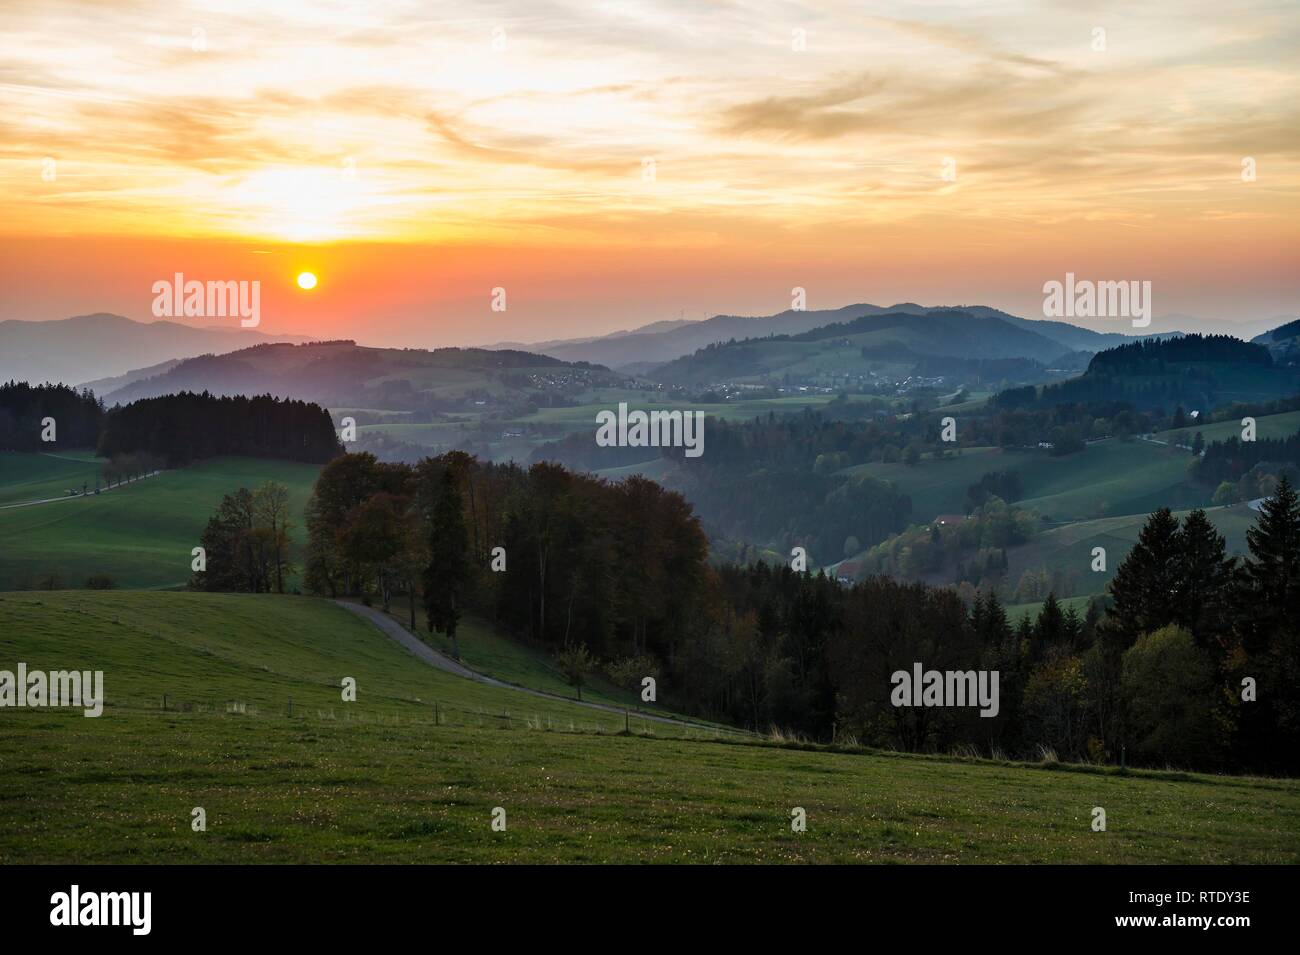 Vue sur paysage vallonné à l'automne, le coucher du soleil, près de St Märgen, Forêt Noire, Bade-Wurtemberg, Allemagne Banque D'Images